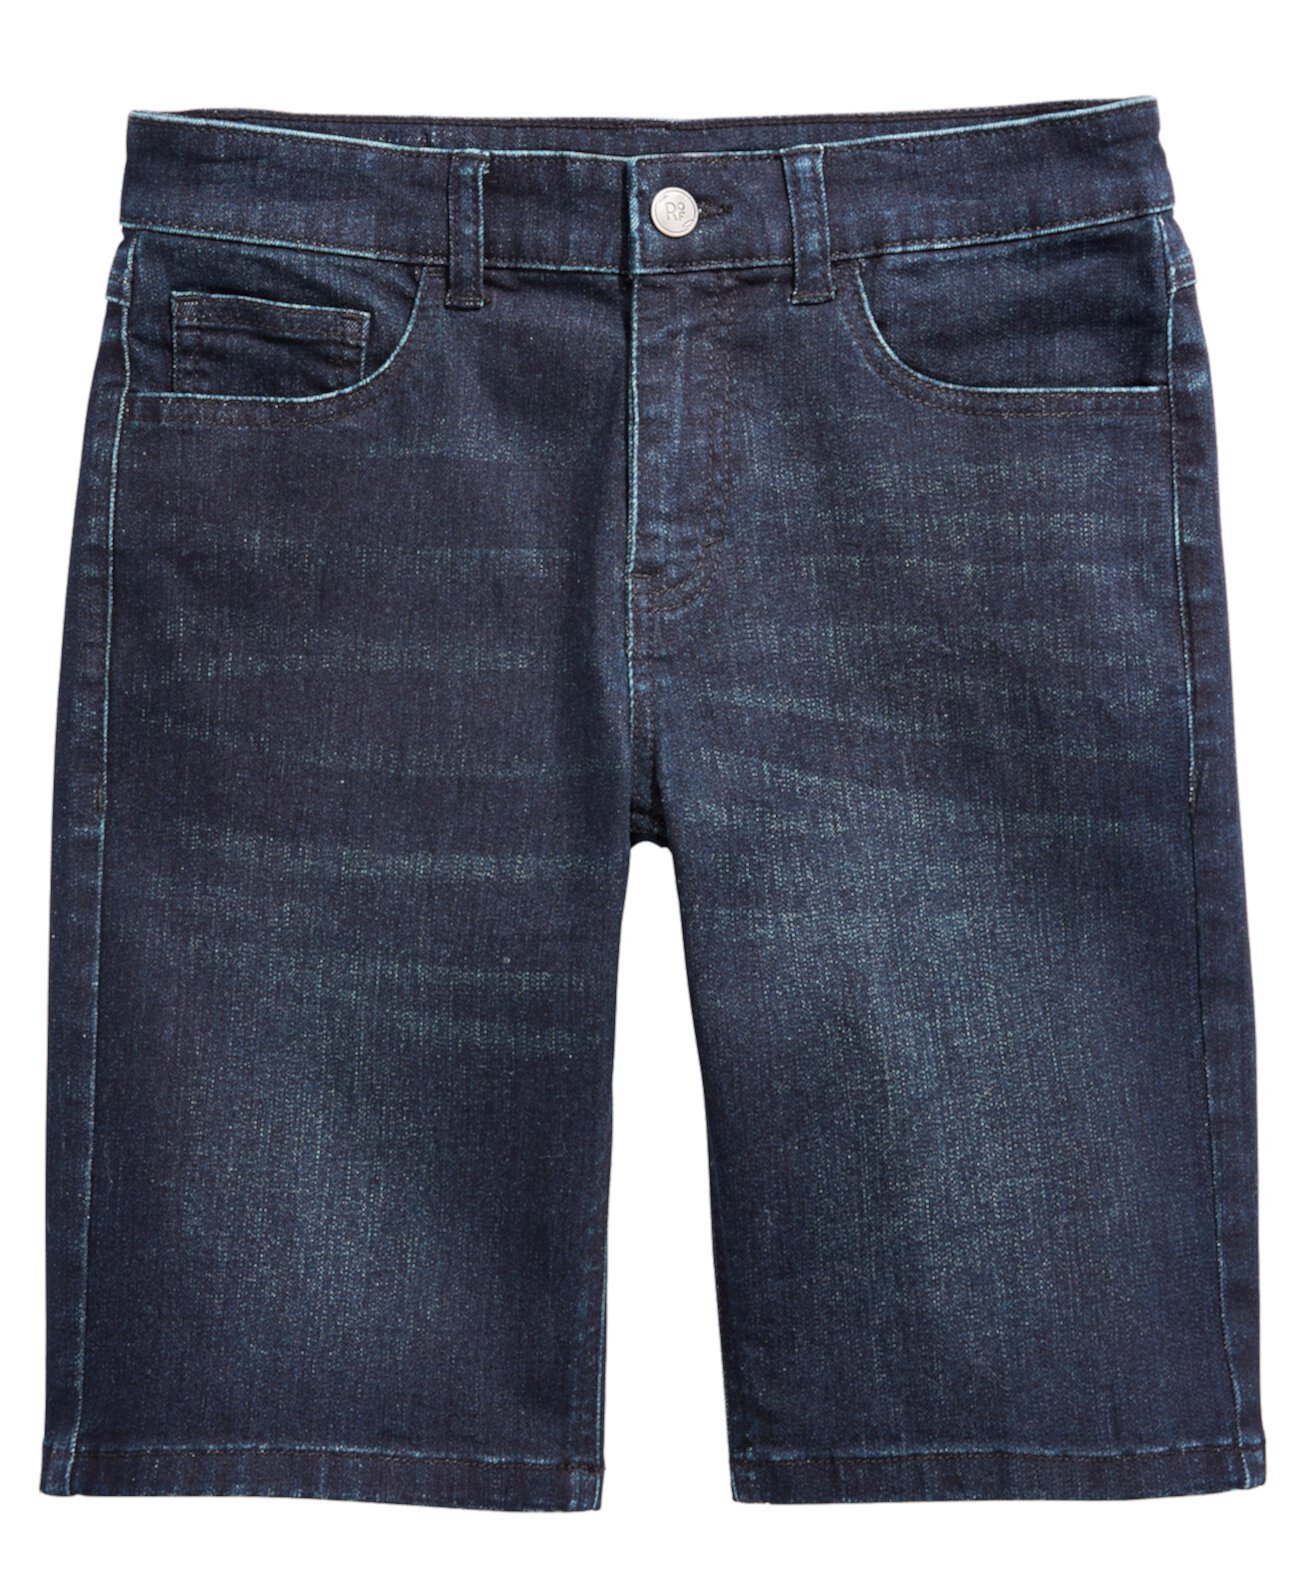 Динамичные эластичные джинсовые шорты Big Boys для Macy's Ring of Fire